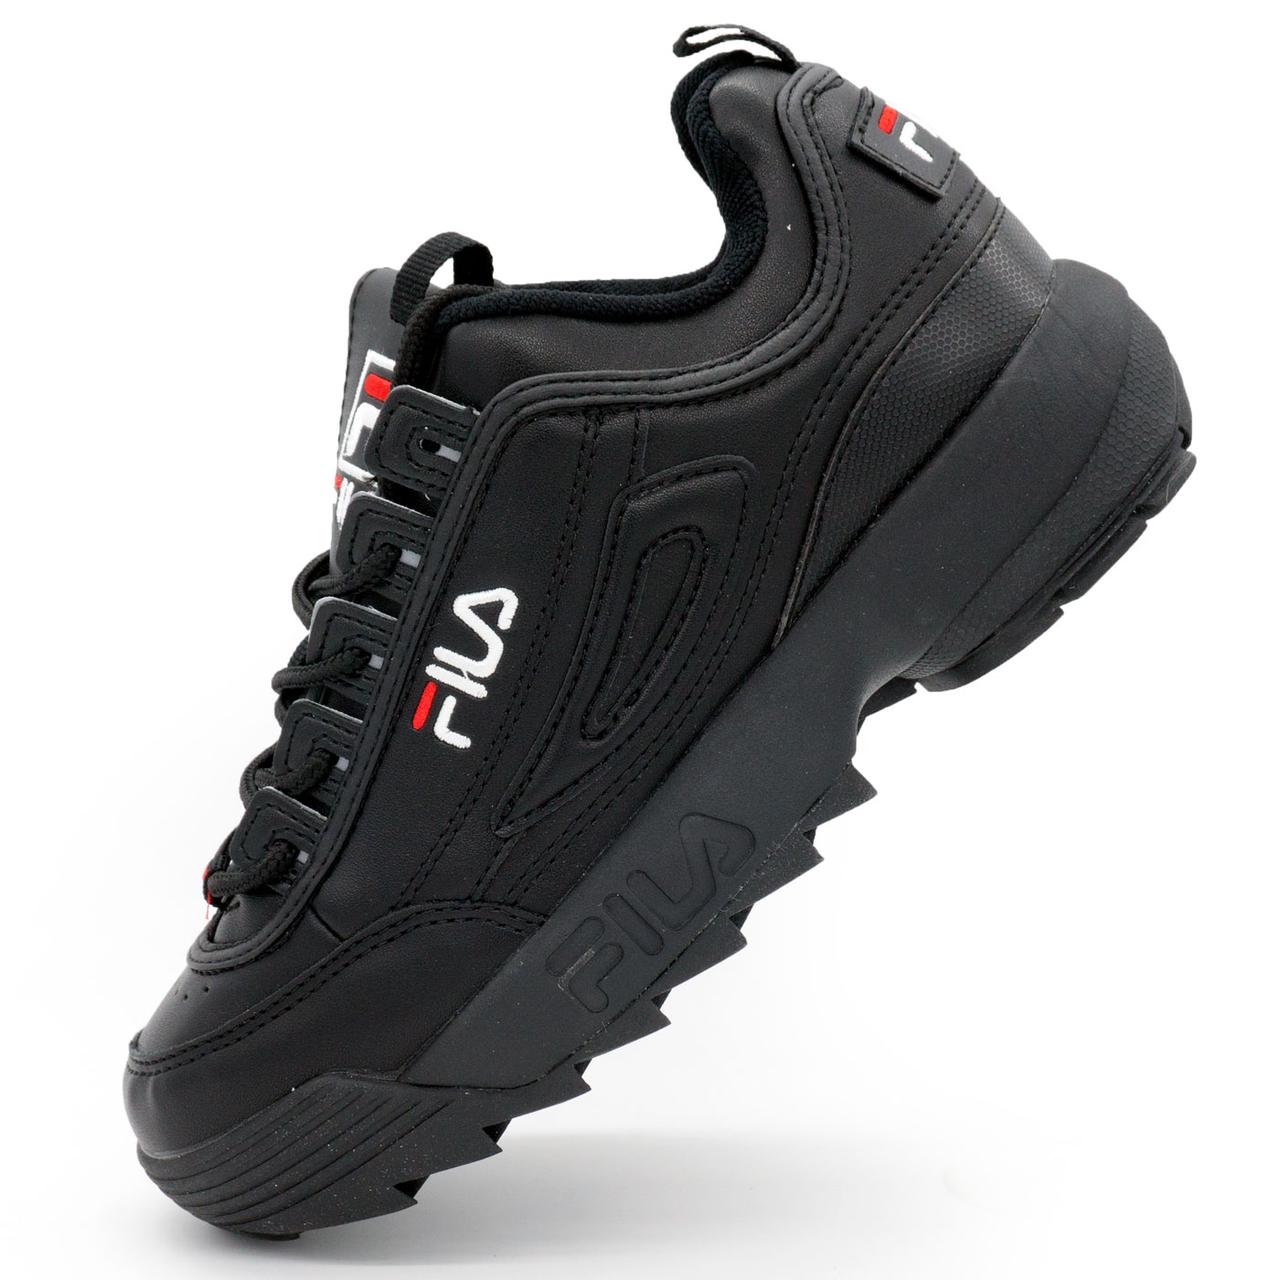 Жіночі повністю чорні кросівки FILA Disruptor 2. Топ якість! 36. Розміри в наявності: 36, 37.